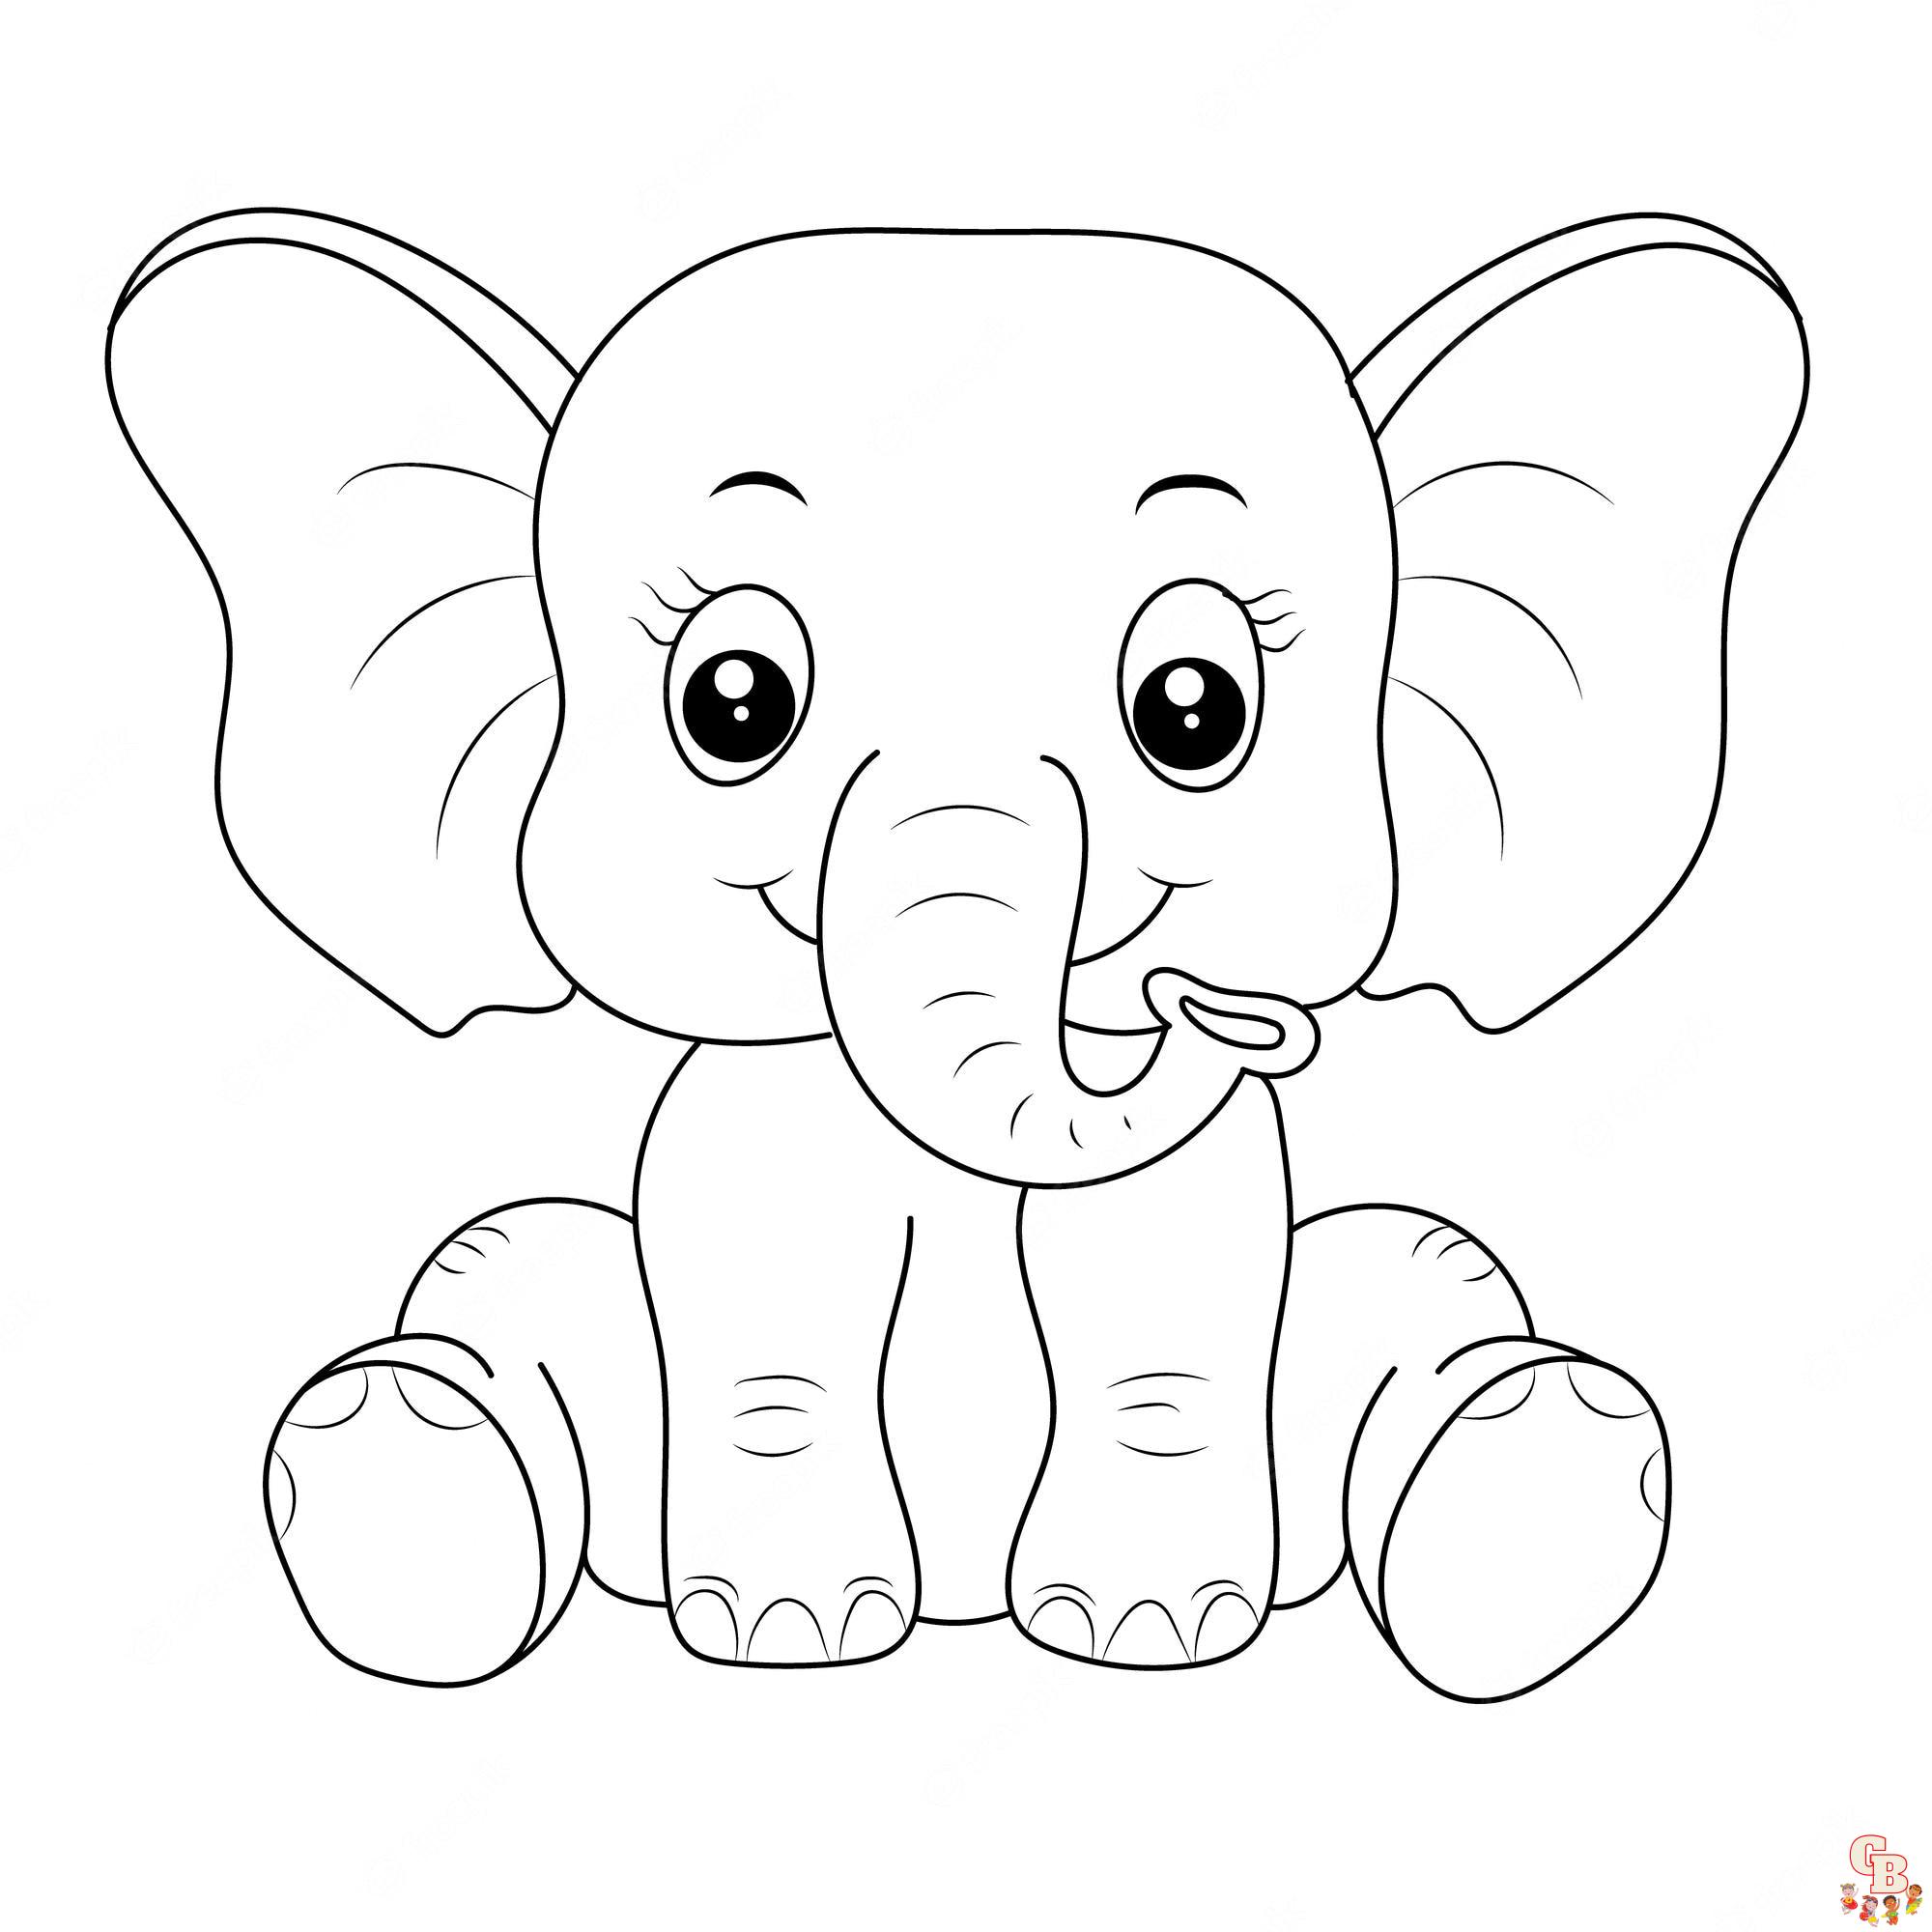 Книжка-раскраска для детей, мультяшный персонаж Слон